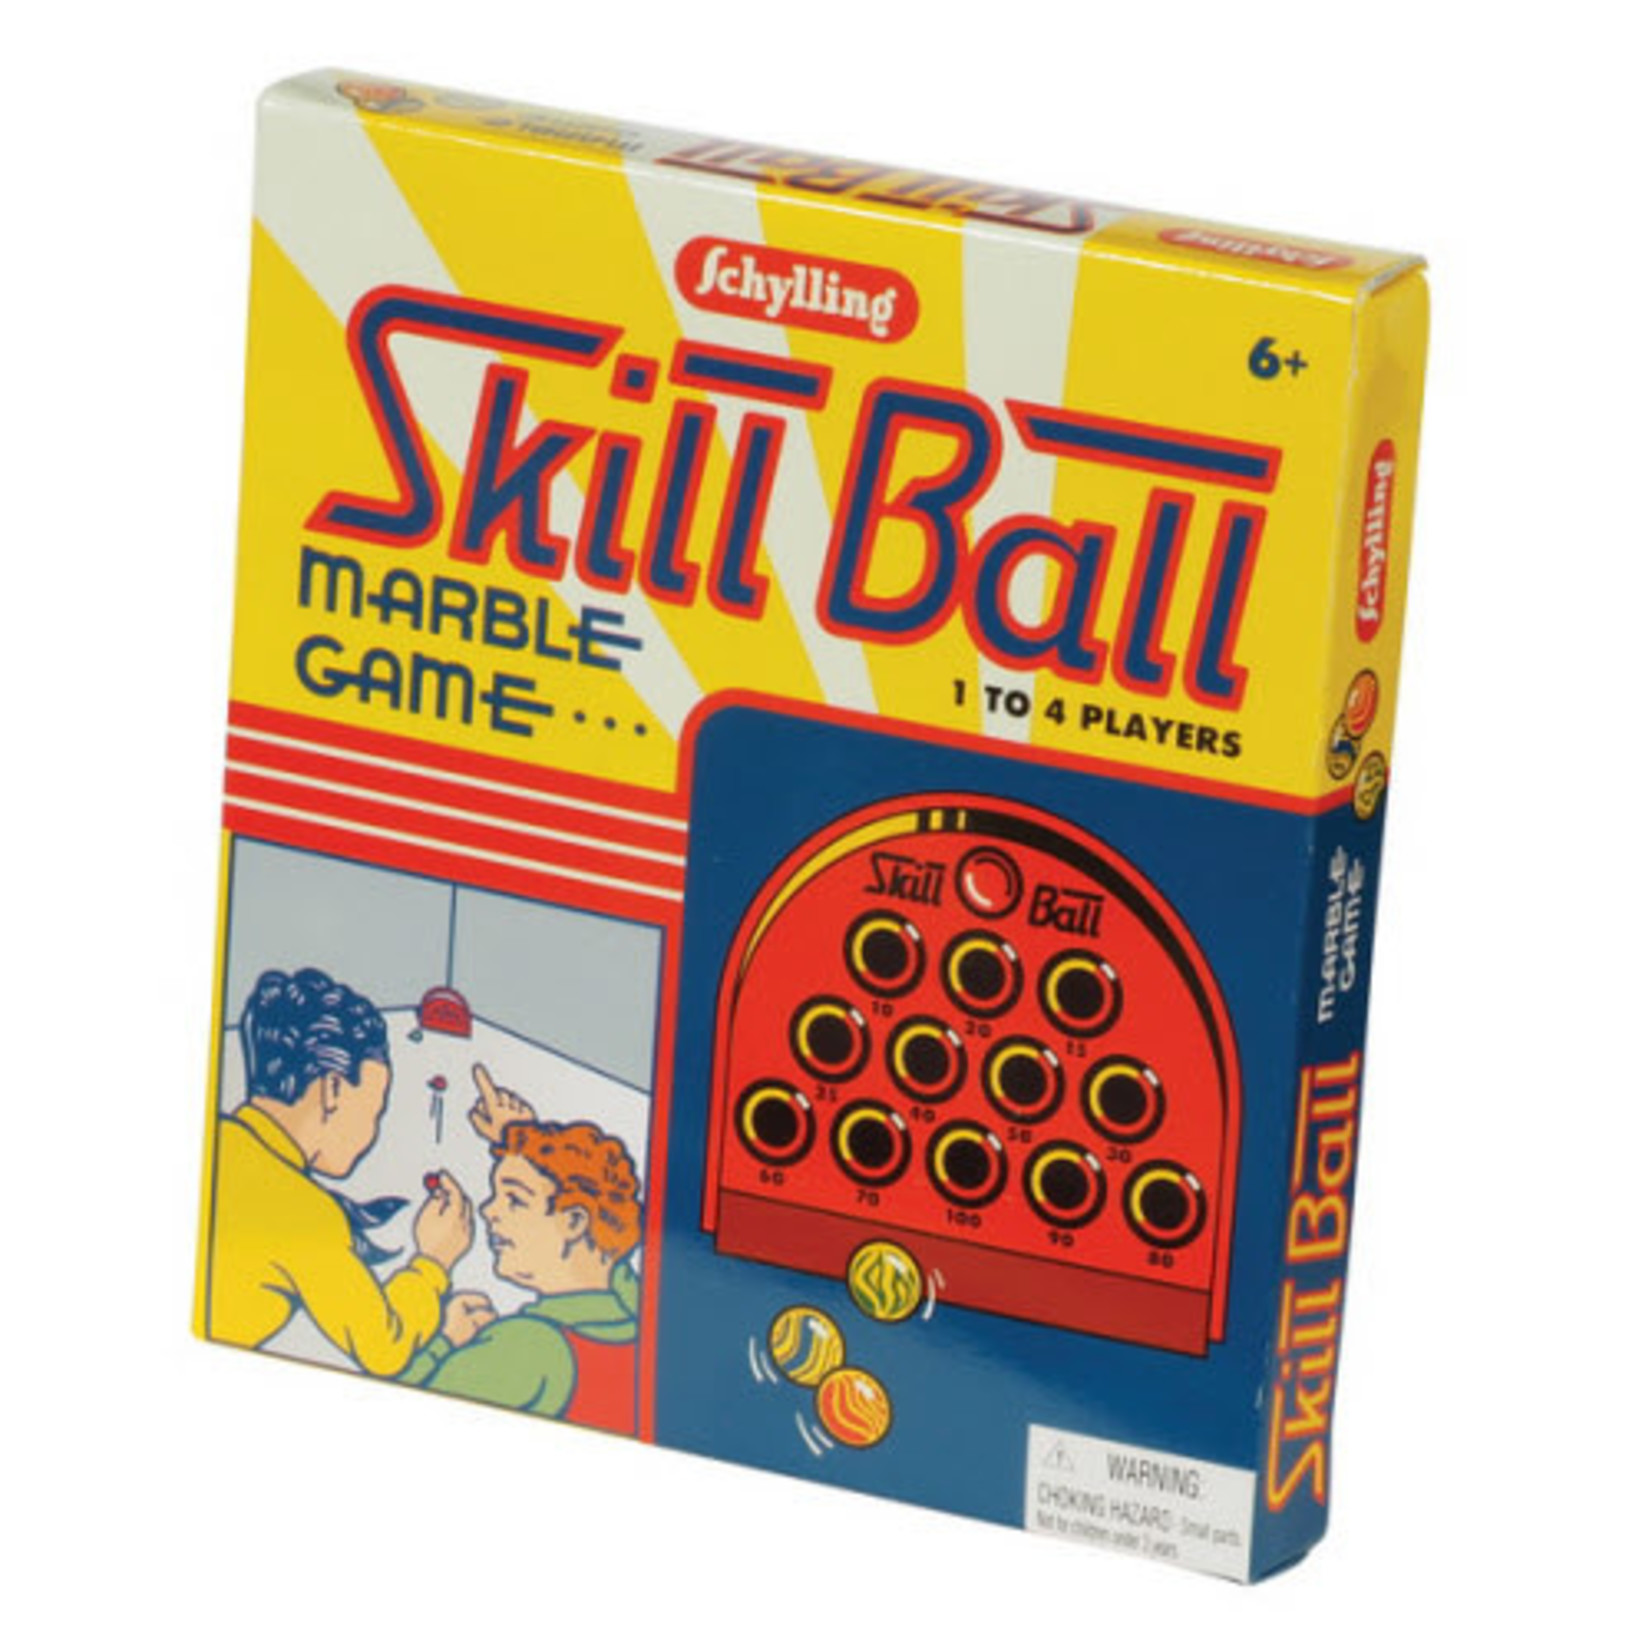 Retro Game - Skill Ball